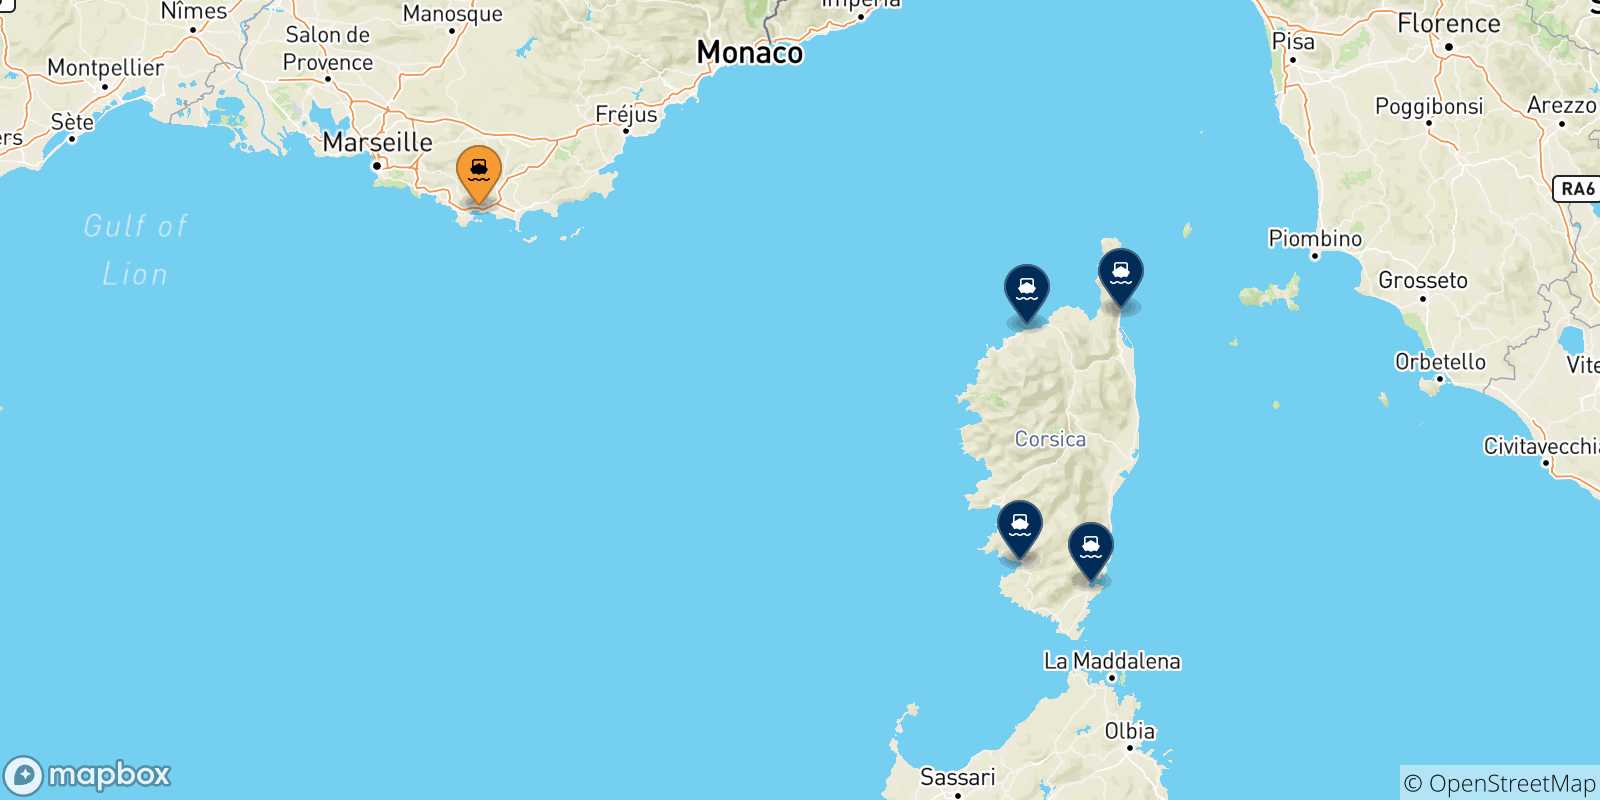 Mappa delle possibili rotte tra Tolone e la Corsica